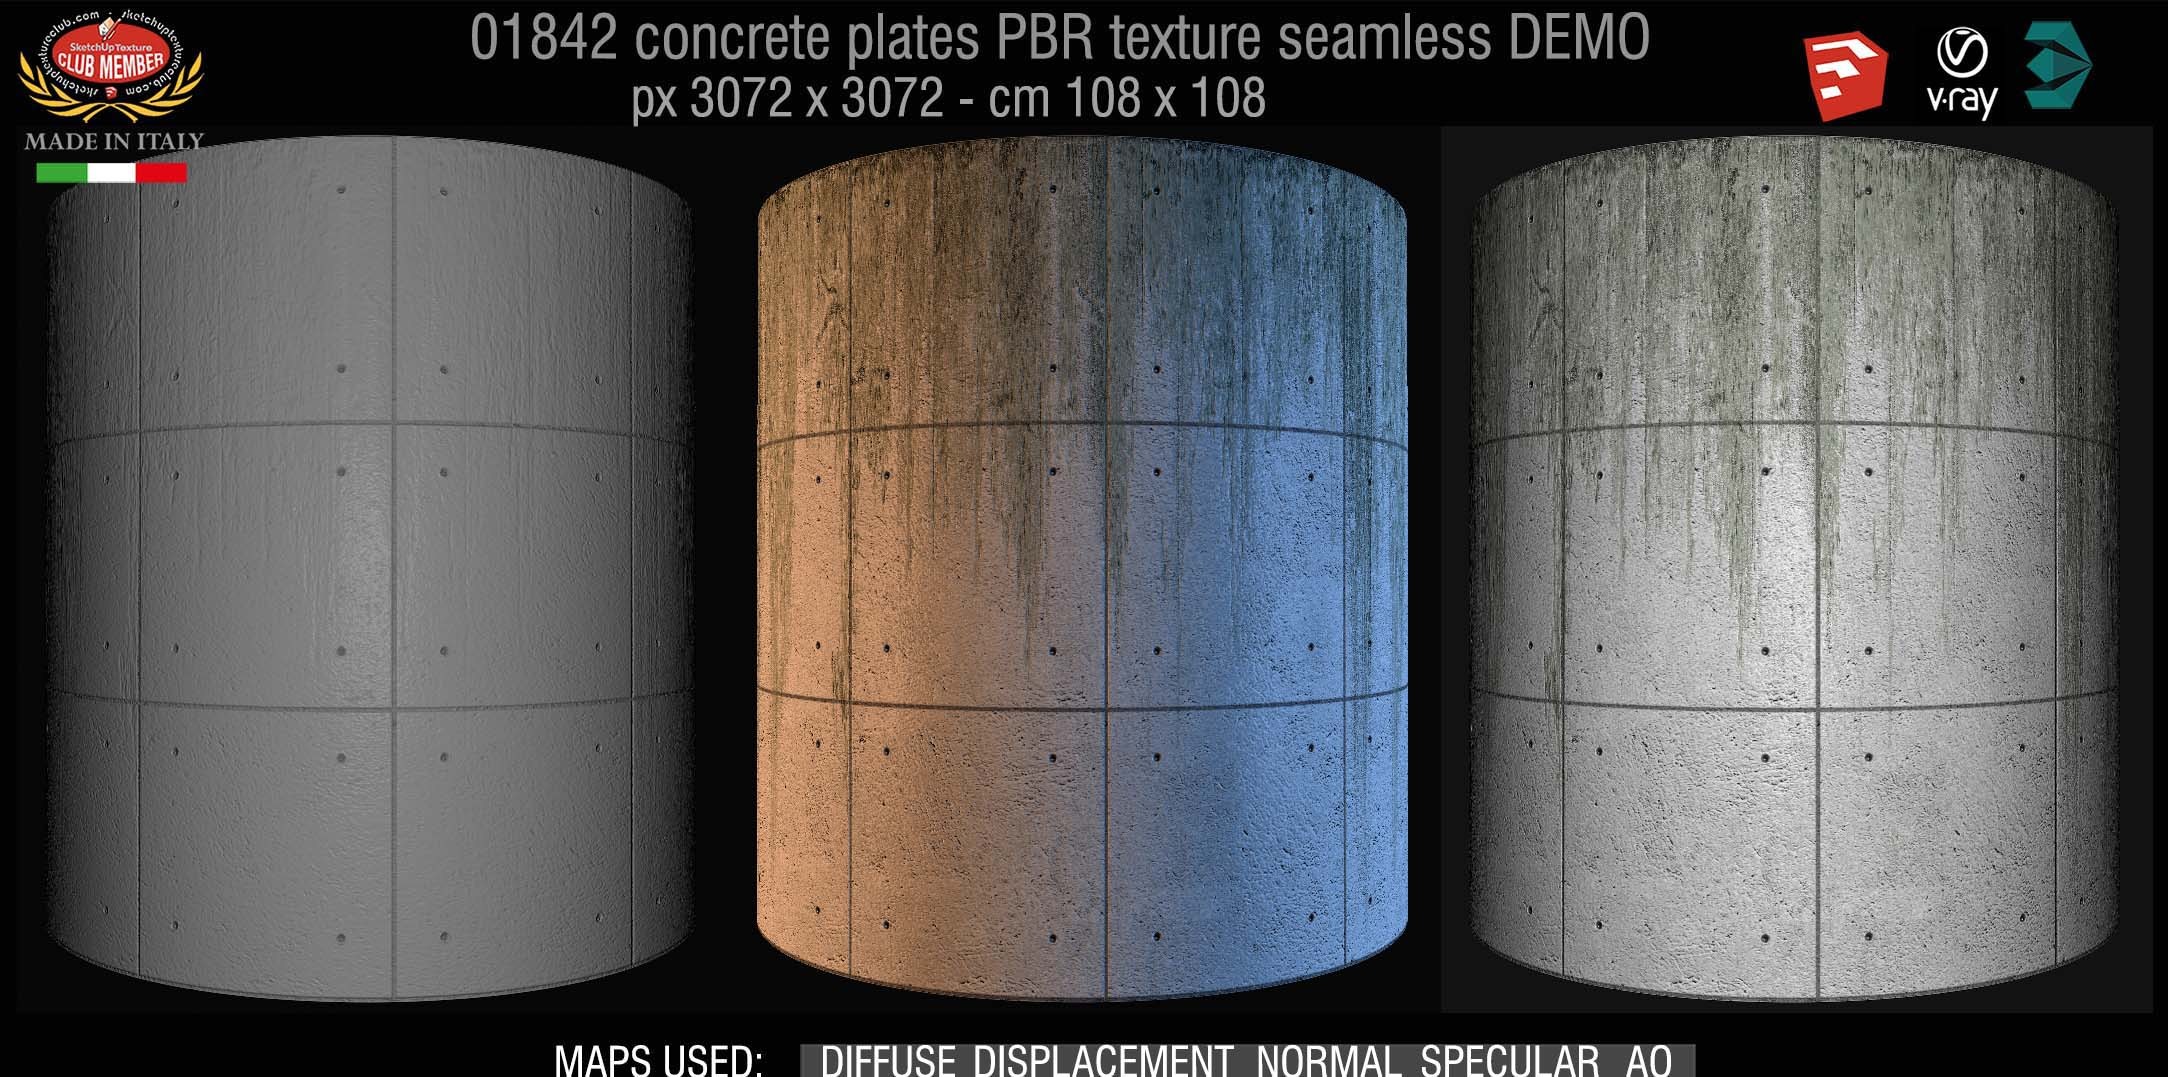 01842 Tadao Ando concrete plates PBR texture seamless DEMO